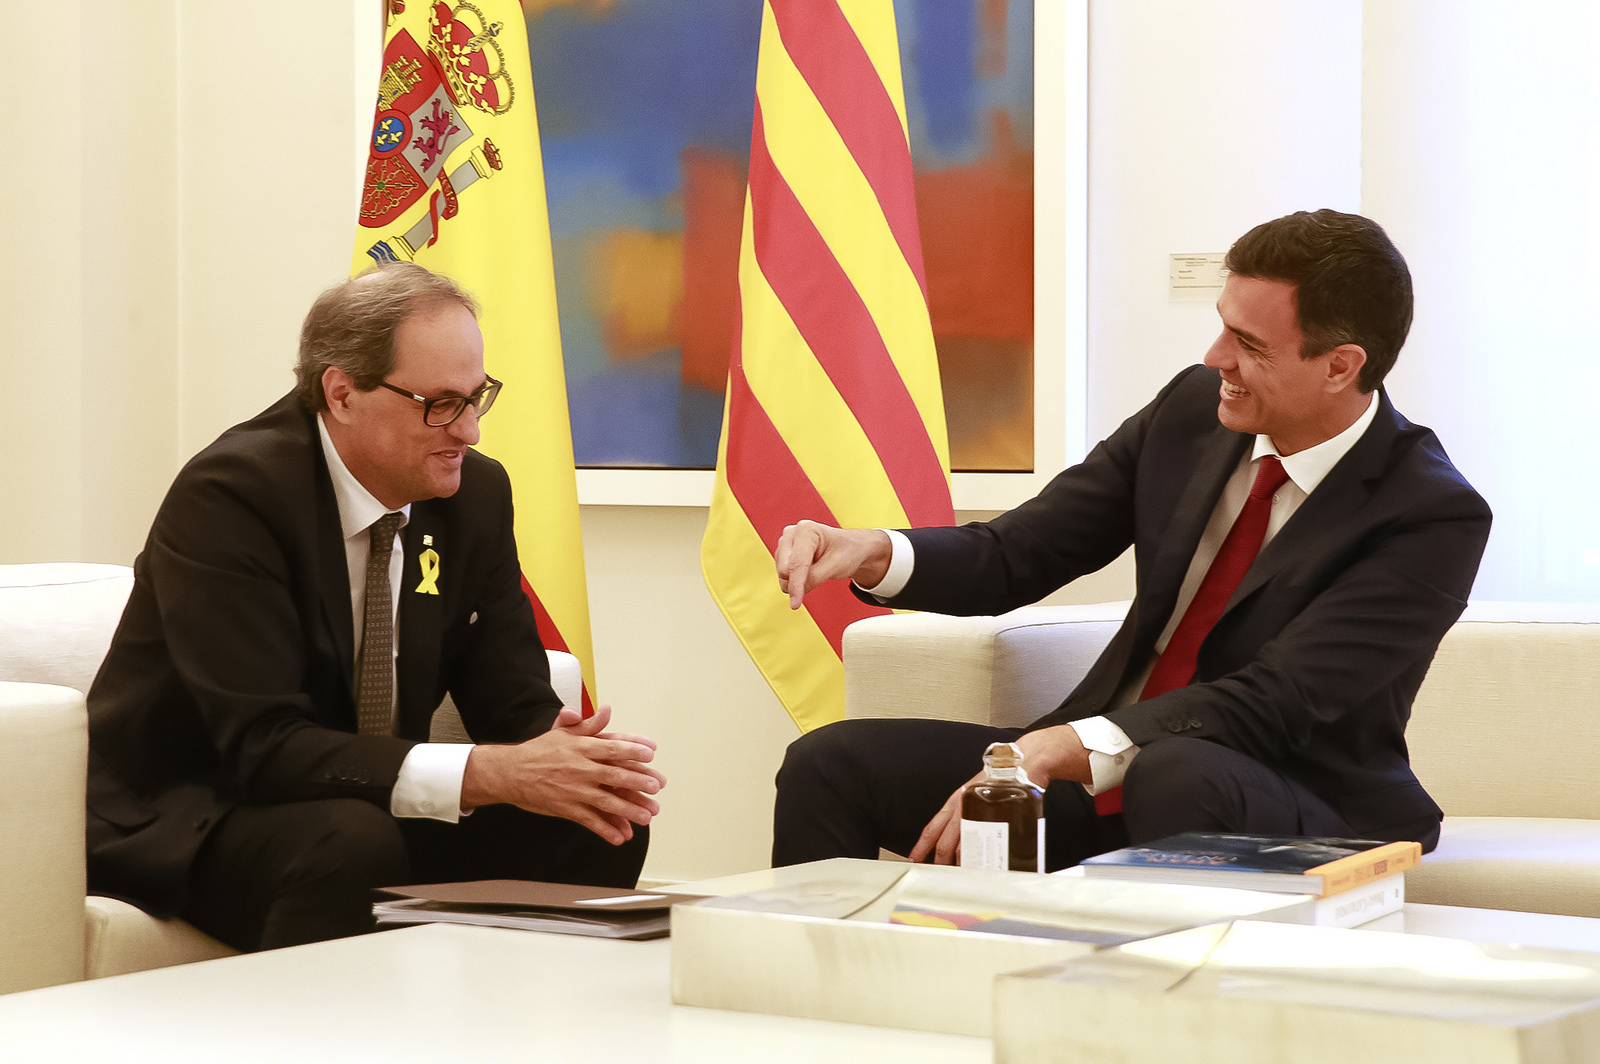 Dos peligros para la integridad de España